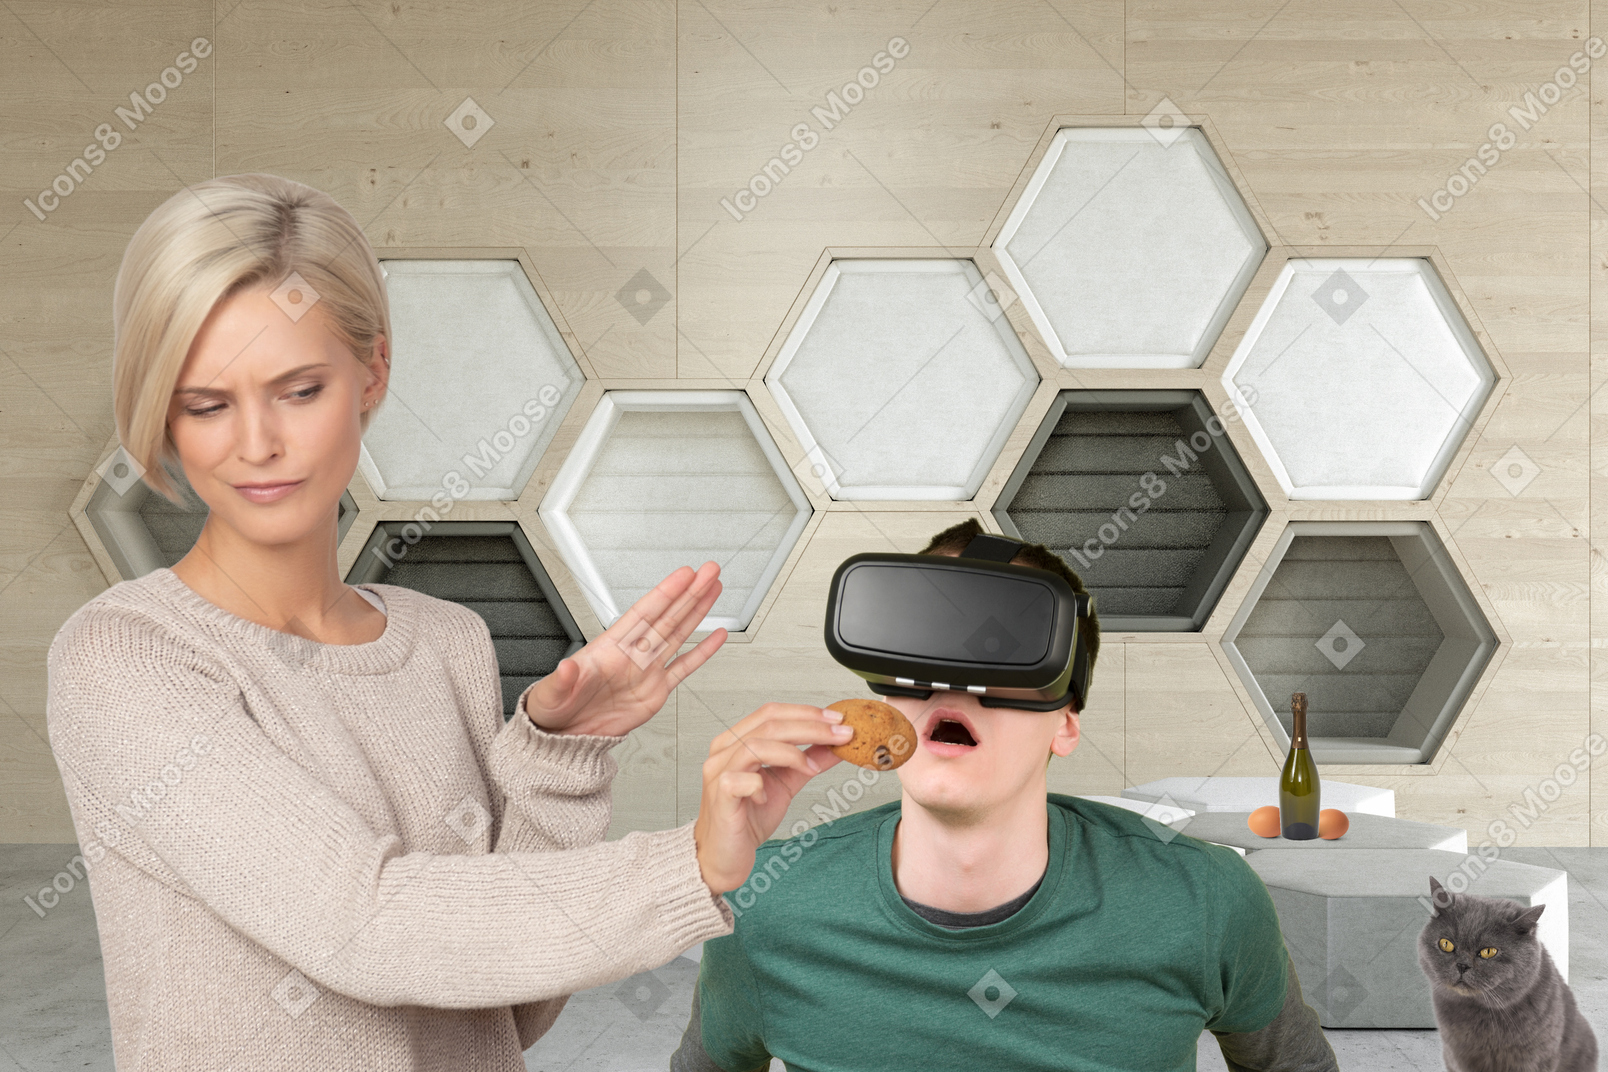 女人用虚拟现实耳机喂饼干给惊讶的男人